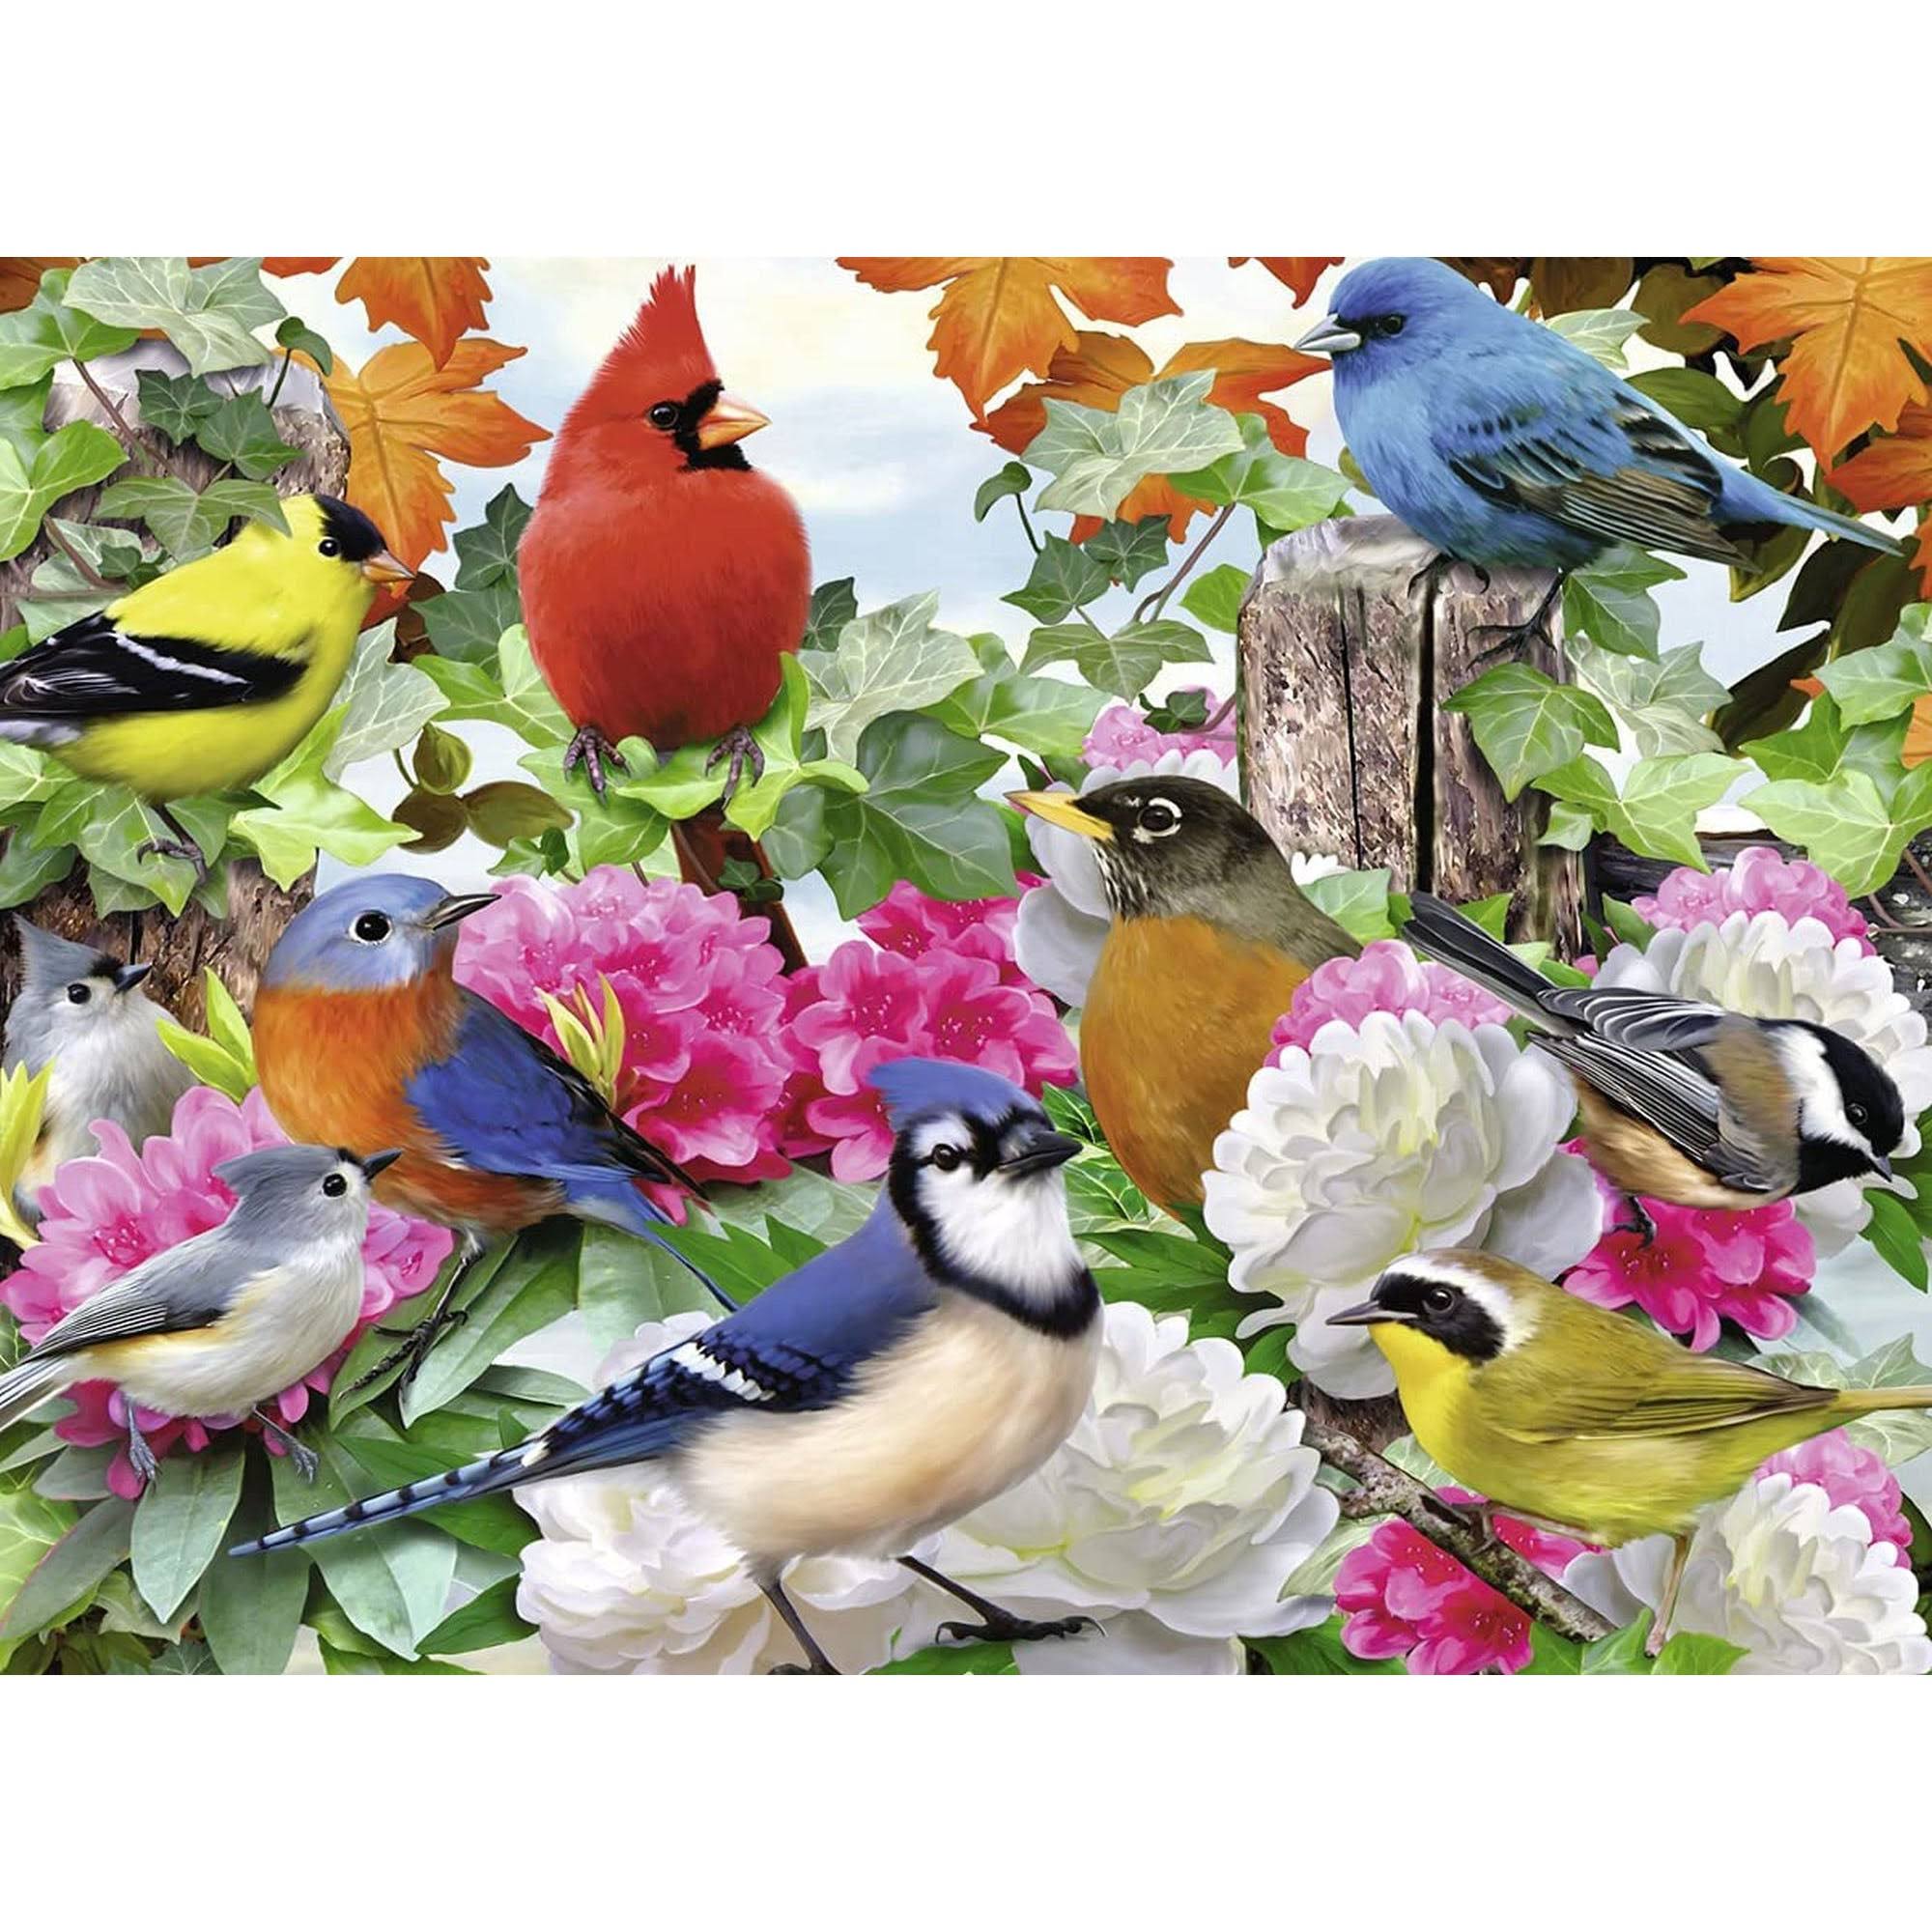 Ravensburger Garden Birds Jigsaw Puzzle - 500 Pieces